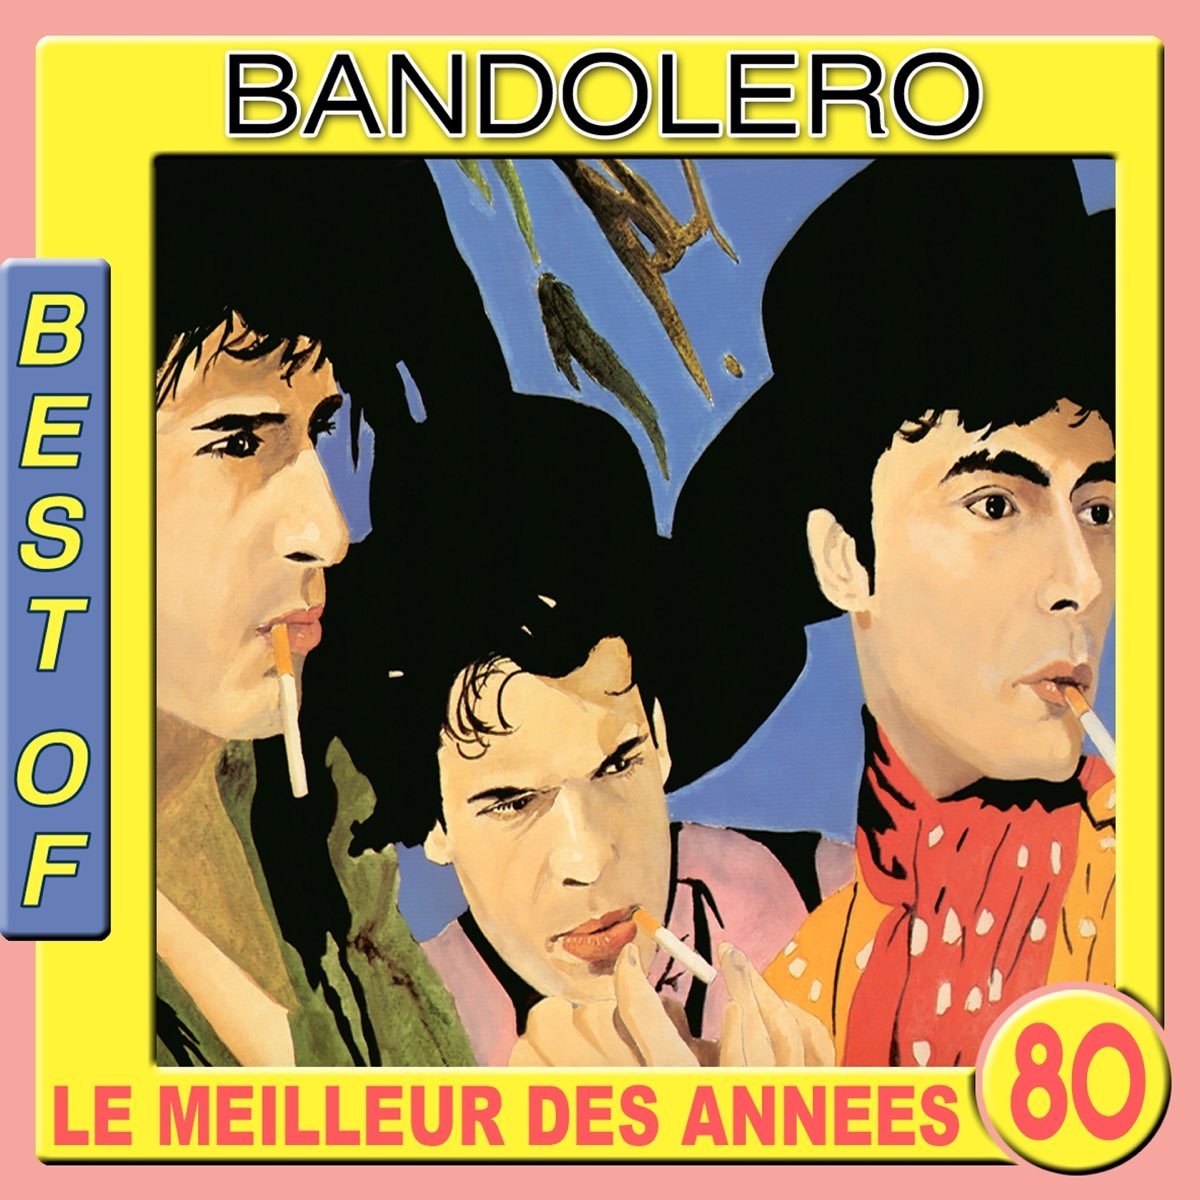 Включи bandoleros. Bandolero. Bandolero Paris Latino. Bandolero album. Bandolero Team.